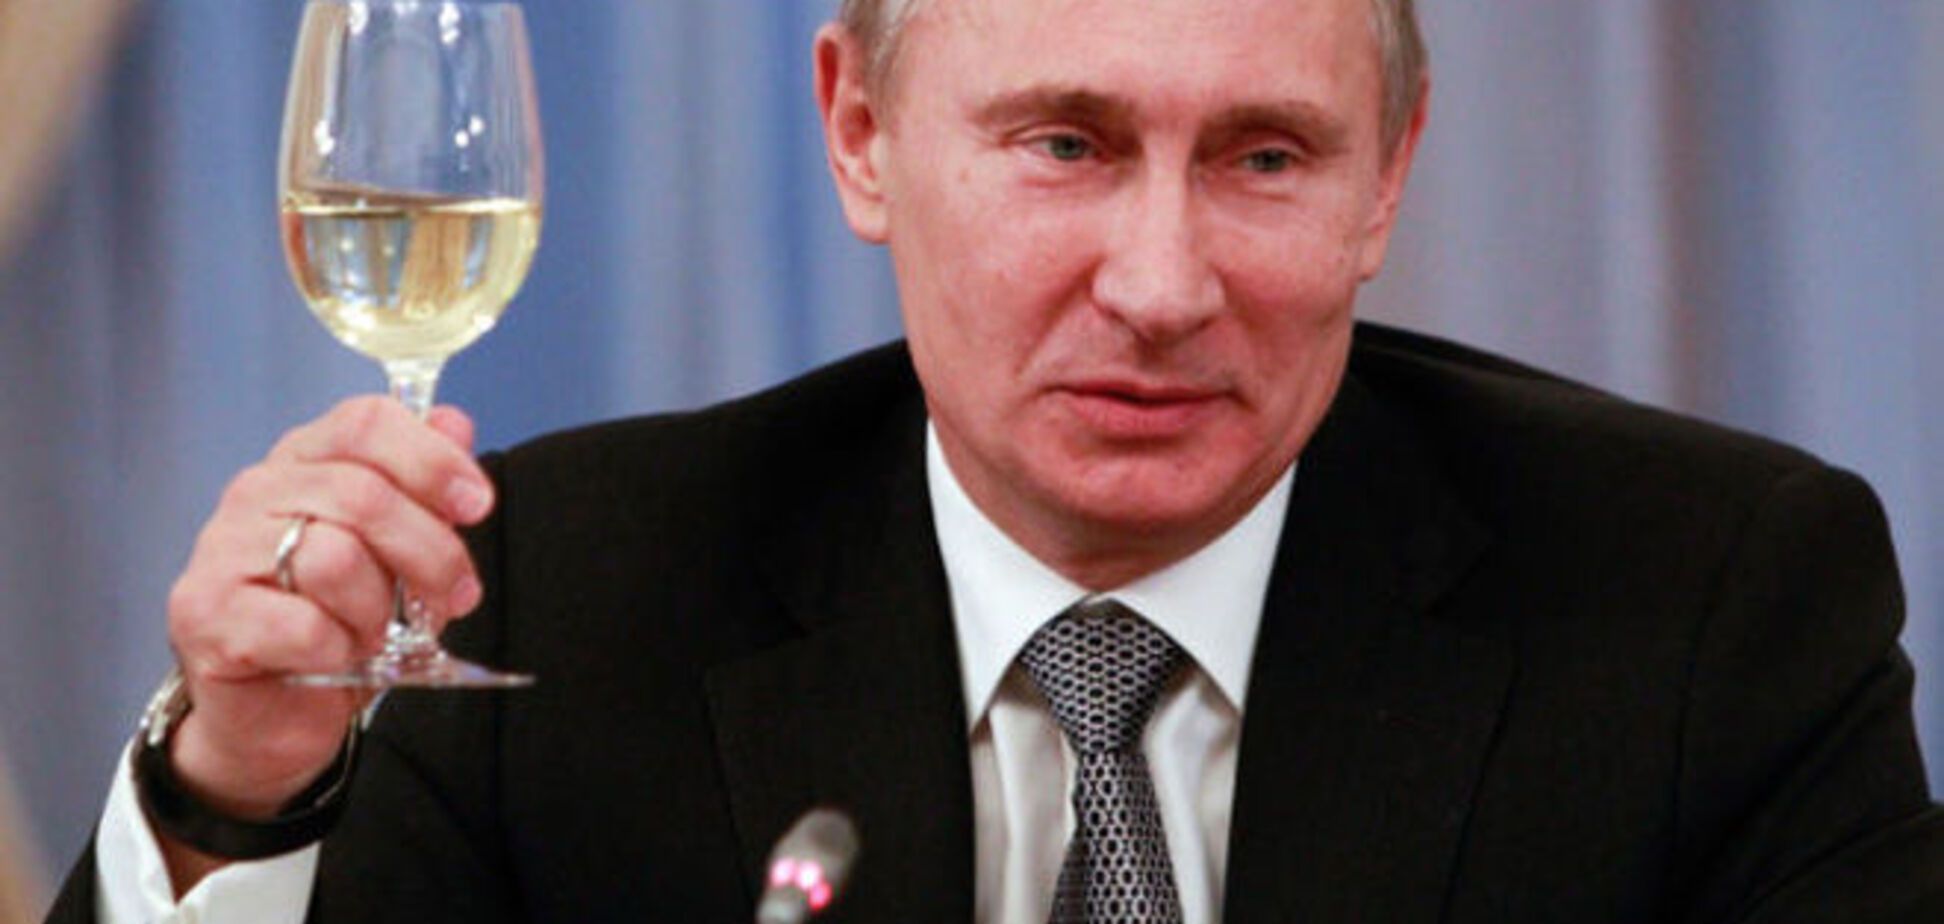 Европа иронизирует: Путина надо поощрять за сплочение Евросоюза